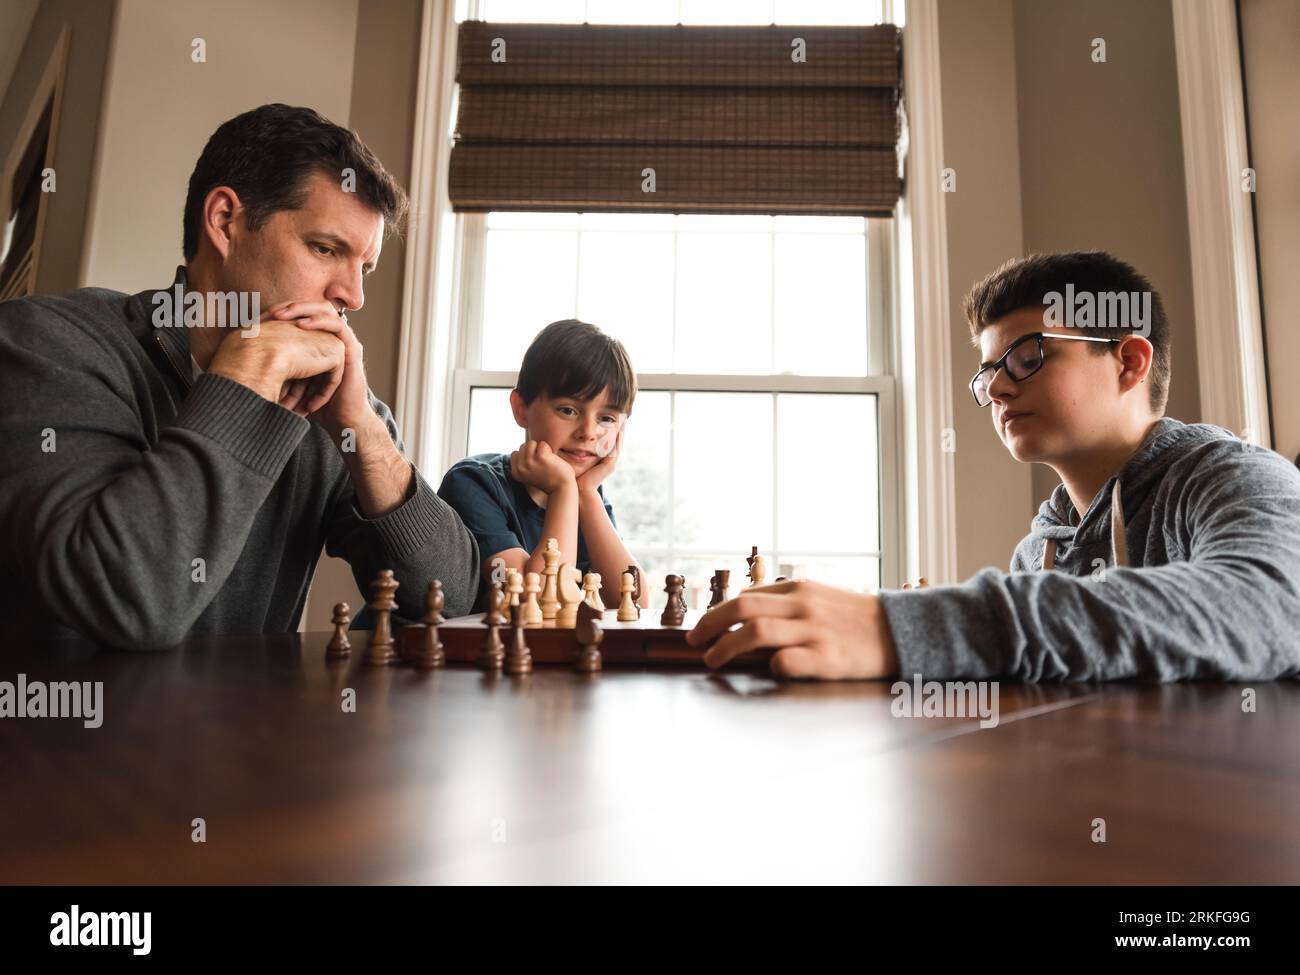 Vater und Sohn spielen Schach an einem Tisch, während der kleine Bruder zusieht. Stockfoto